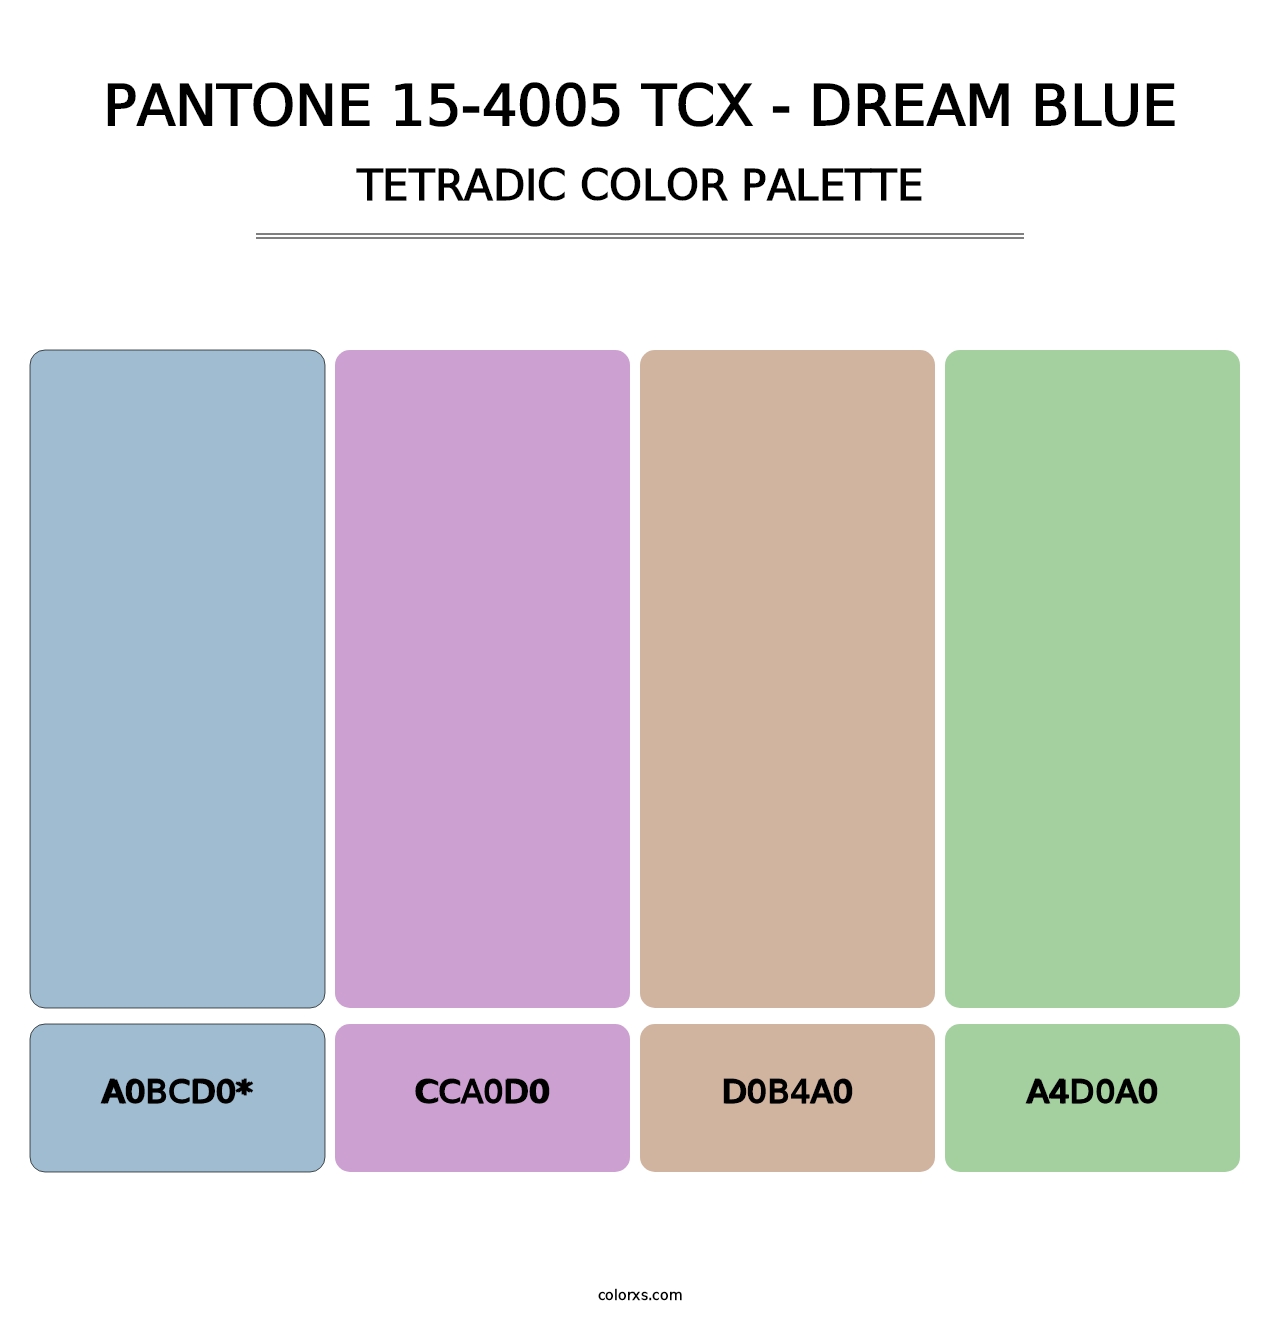 PANTONE 15-4005 TCX - Dream Blue - Tetradic Color Palette